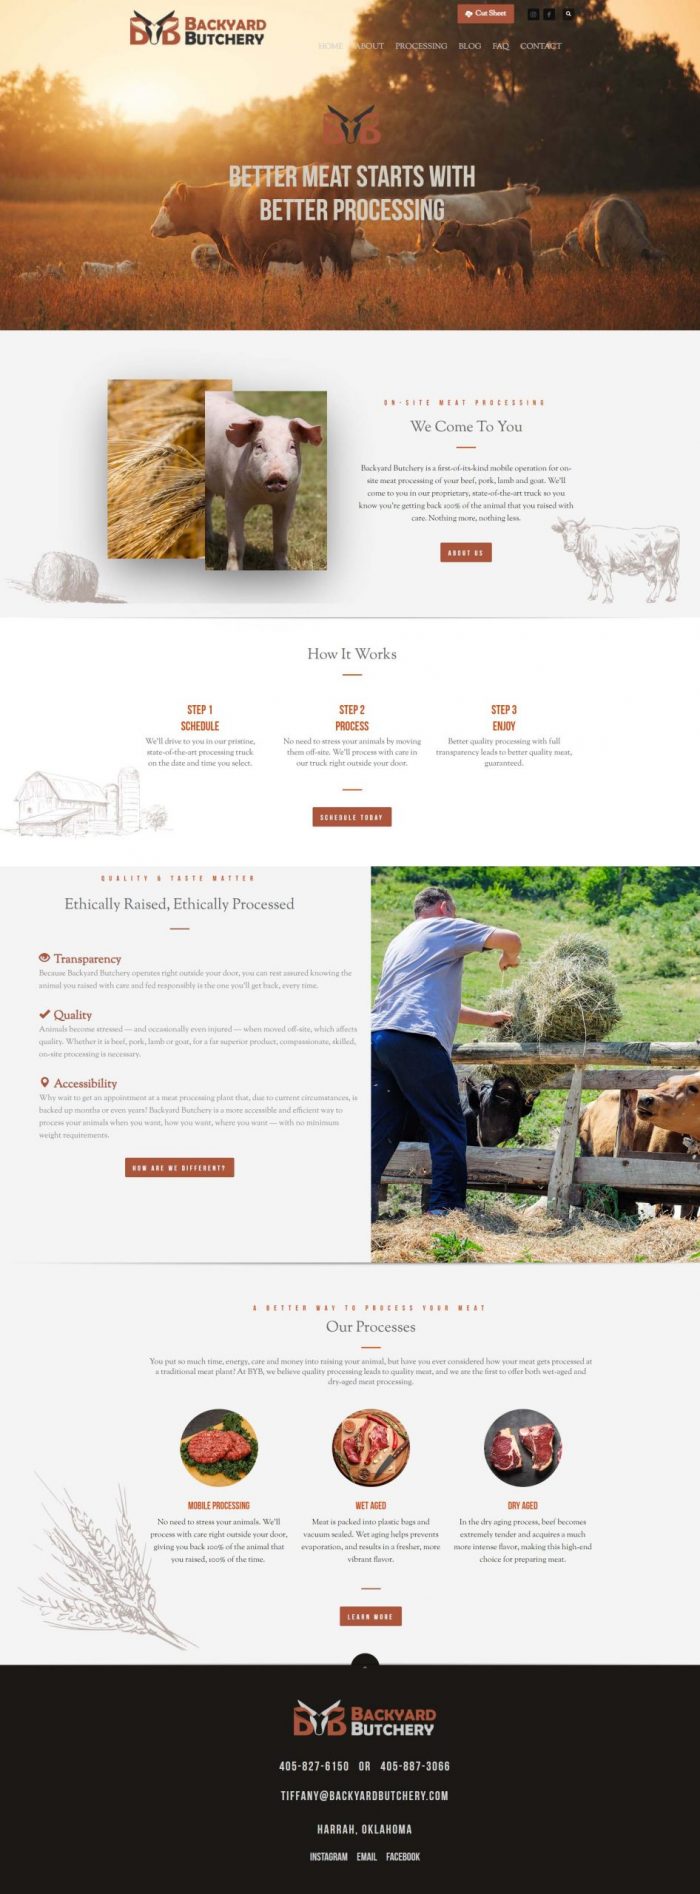 Backyard Butchery Website - Uptimize Marketing